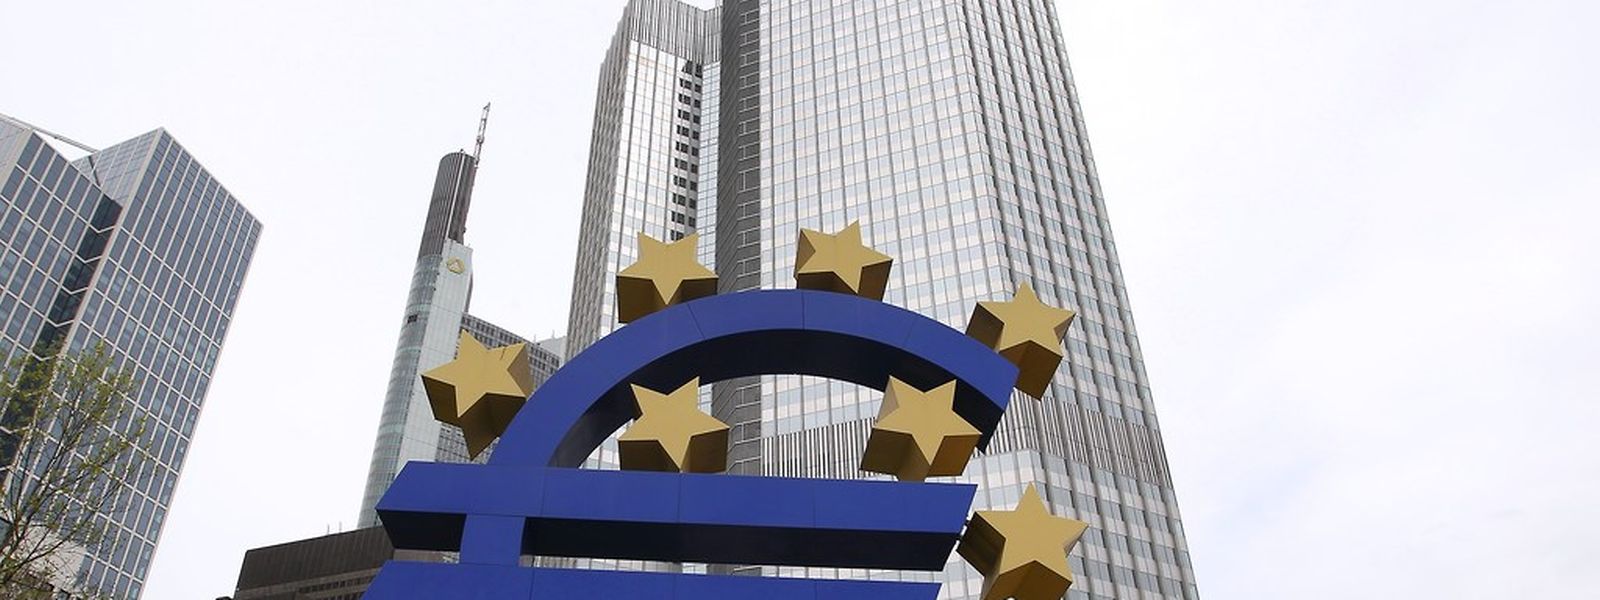 Die Europäische Zentralbank in Frankfurt entscheidet heute über den Kauf von Staatsanleihen.